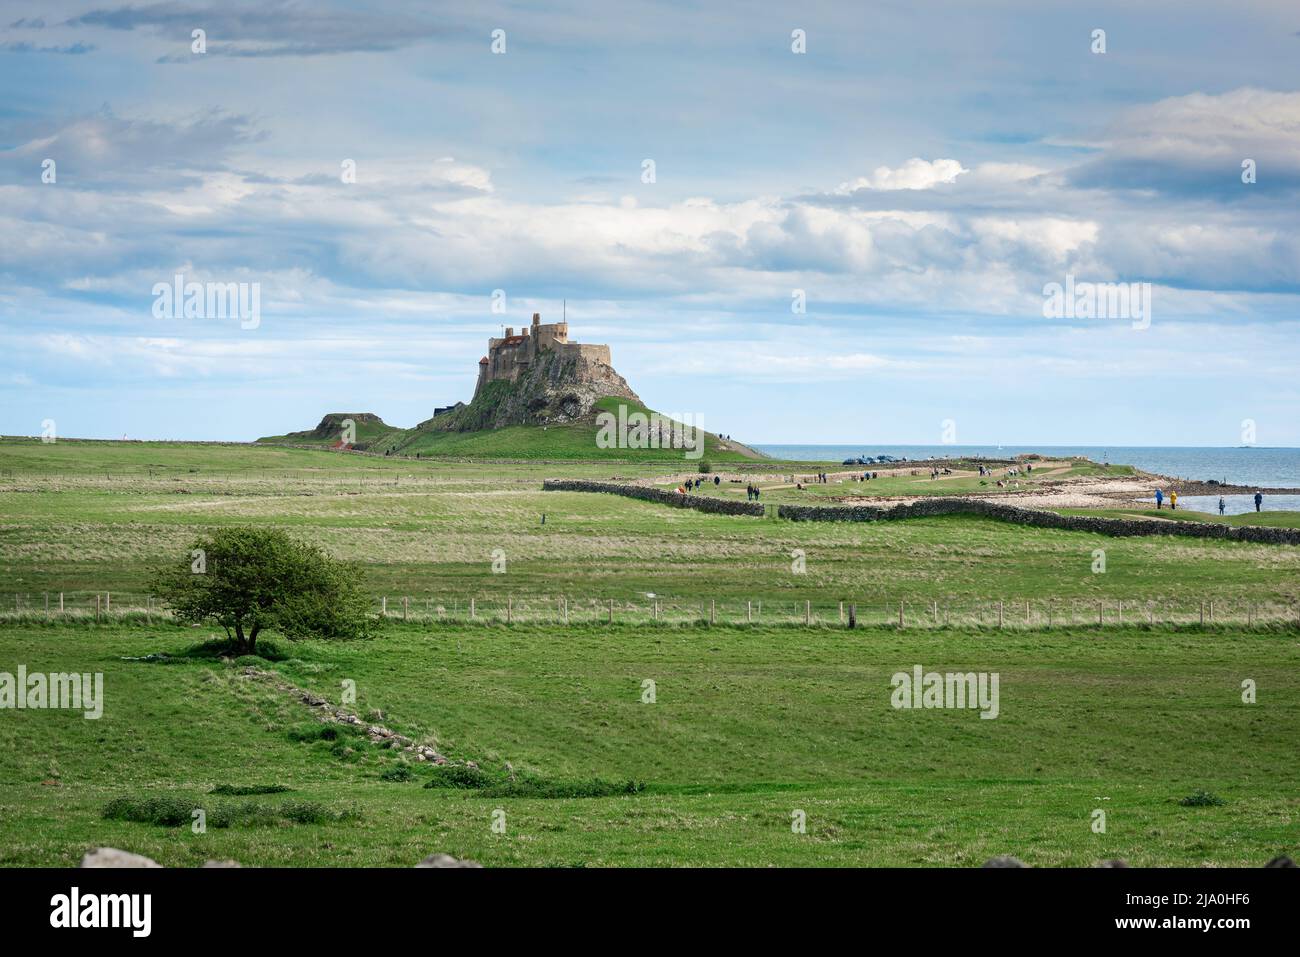 L'île Sainte de Northumberland, vue des gens qui marchent vers le château du 16th siècle situé sur l'île Sainte (île de Lindisfarne), Northumberland, Angleterre Banque D'Images